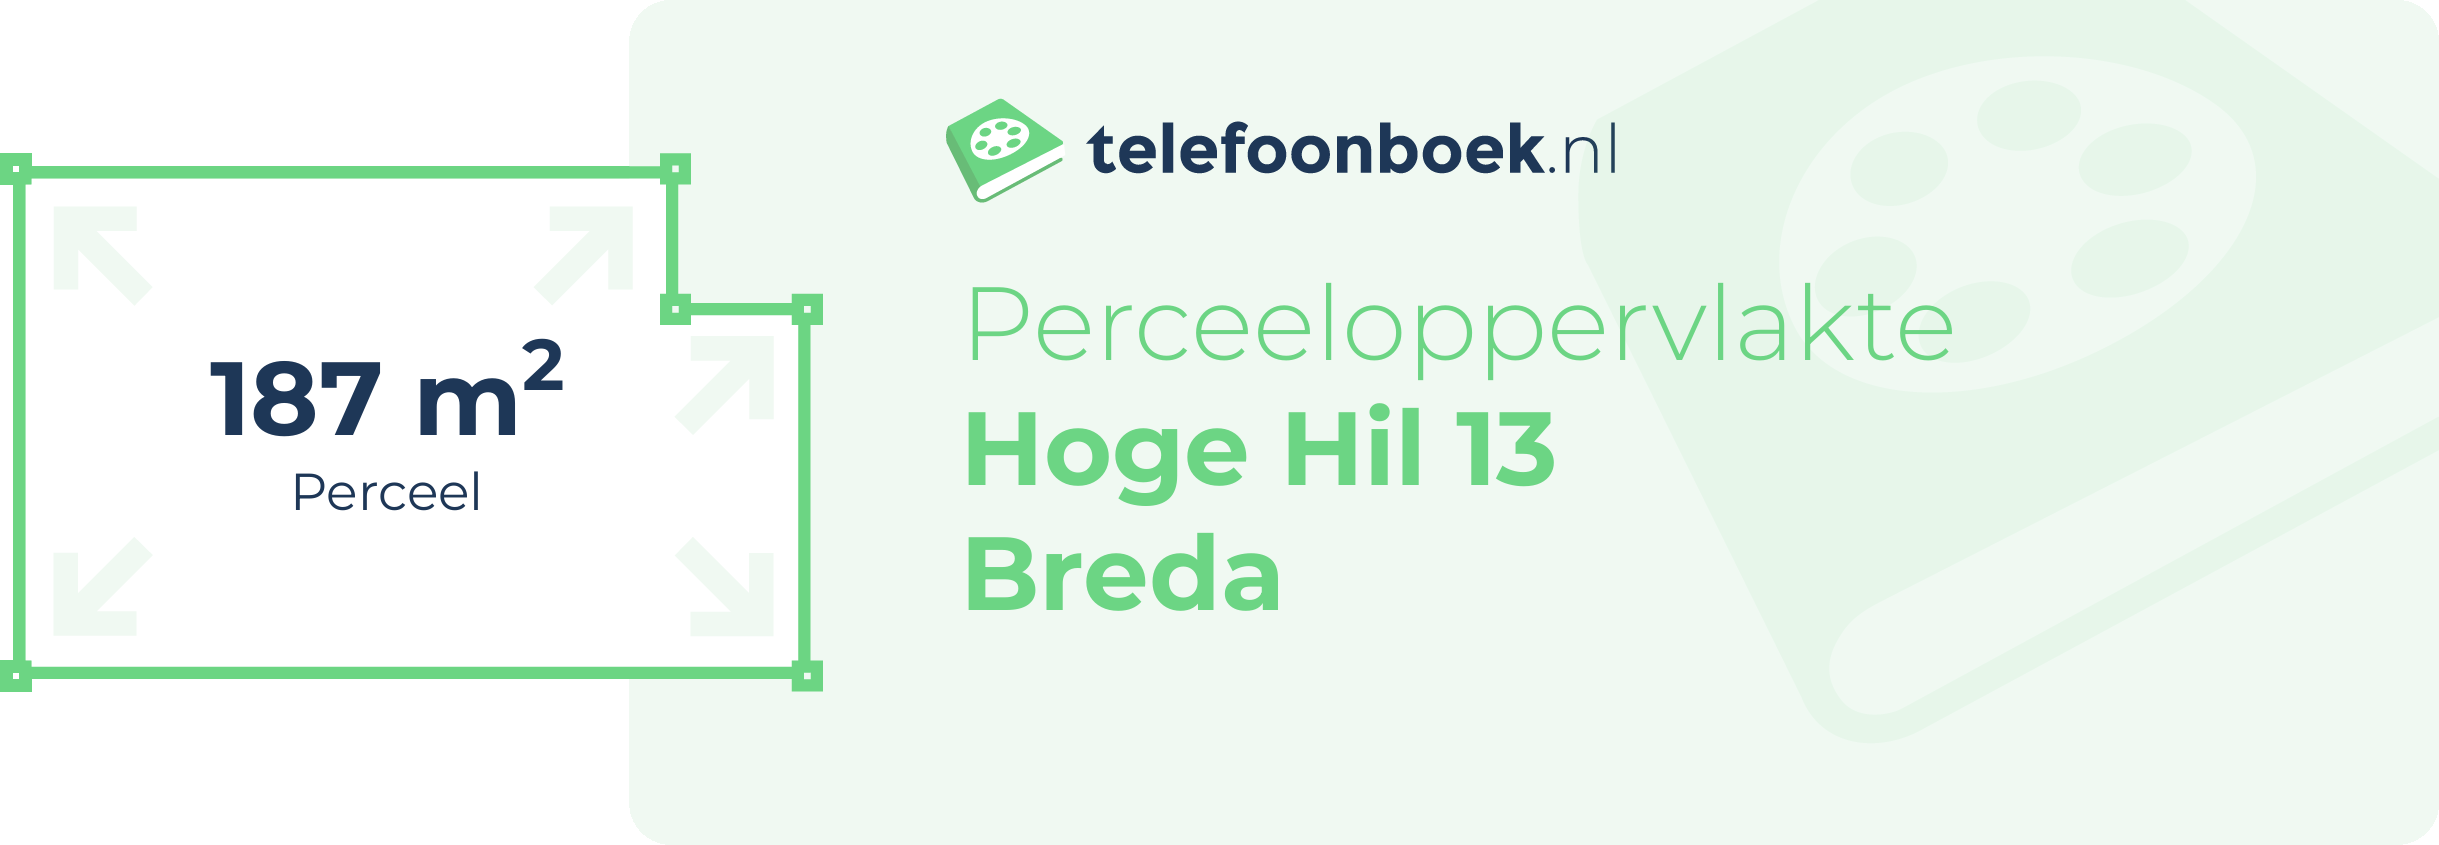 Perceeloppervlakte Hoge Hil 13 Breda